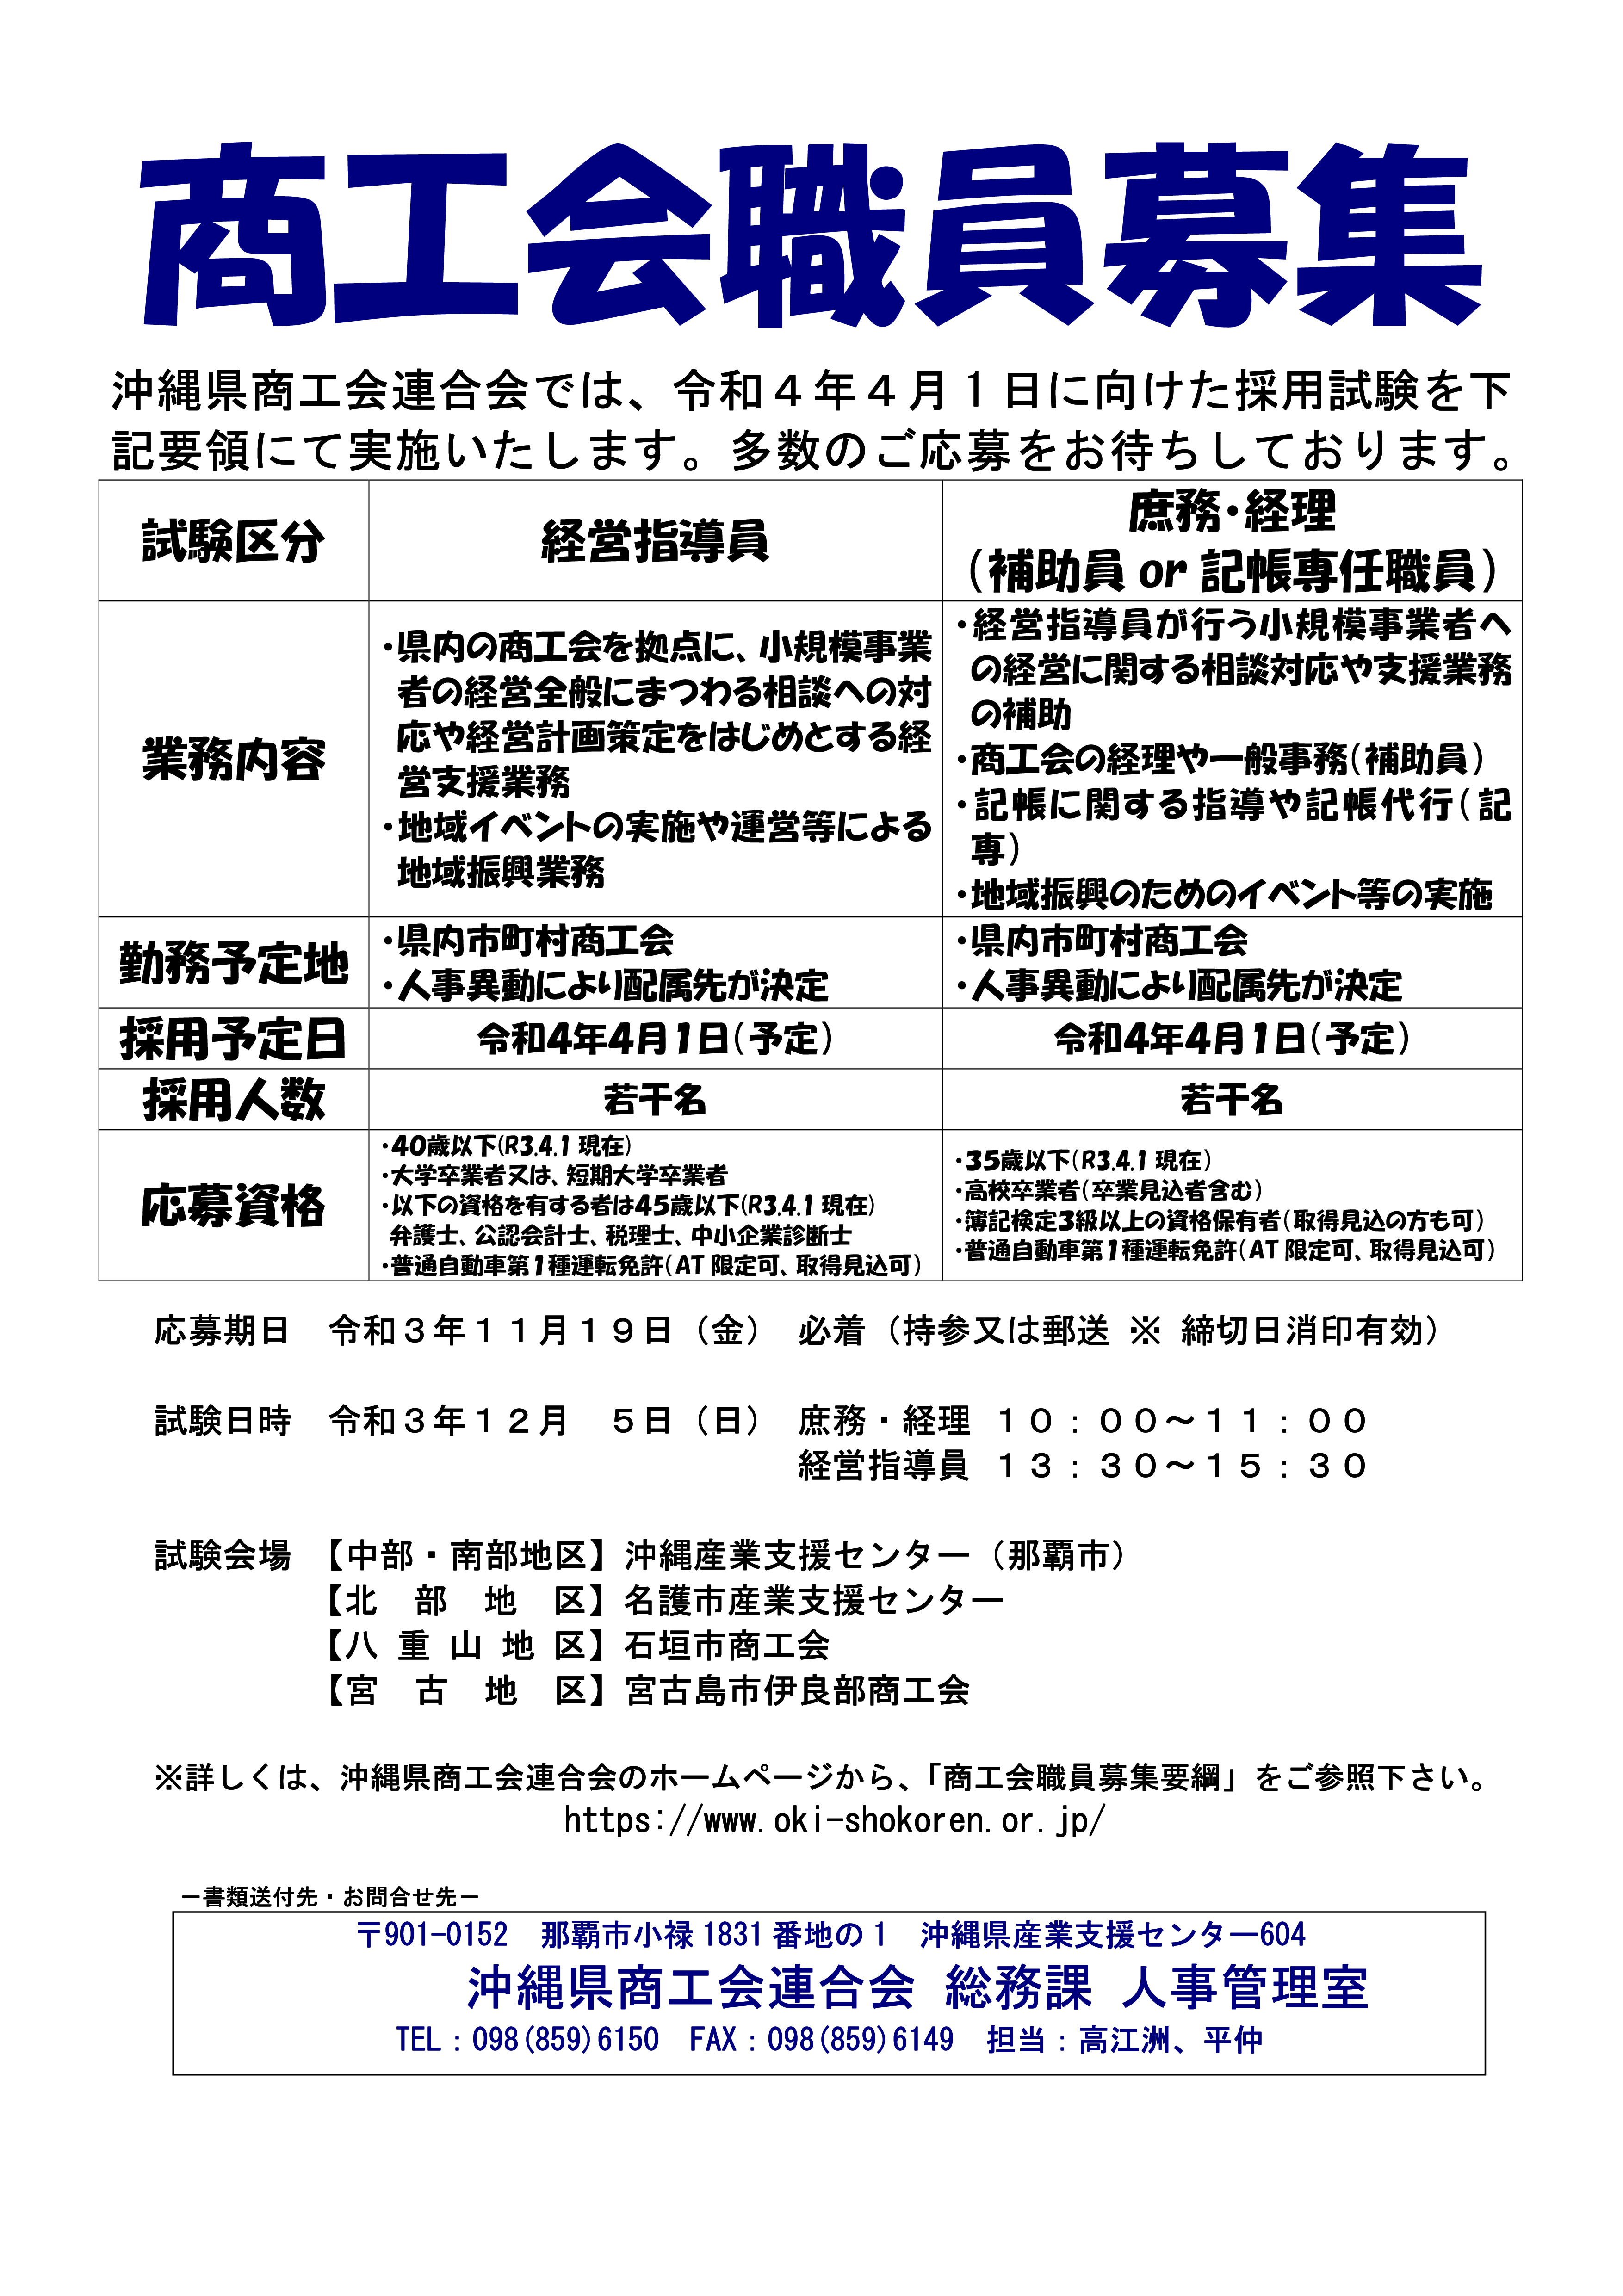 沖縄県商工会連合会　商工会職員採用試験の実施について